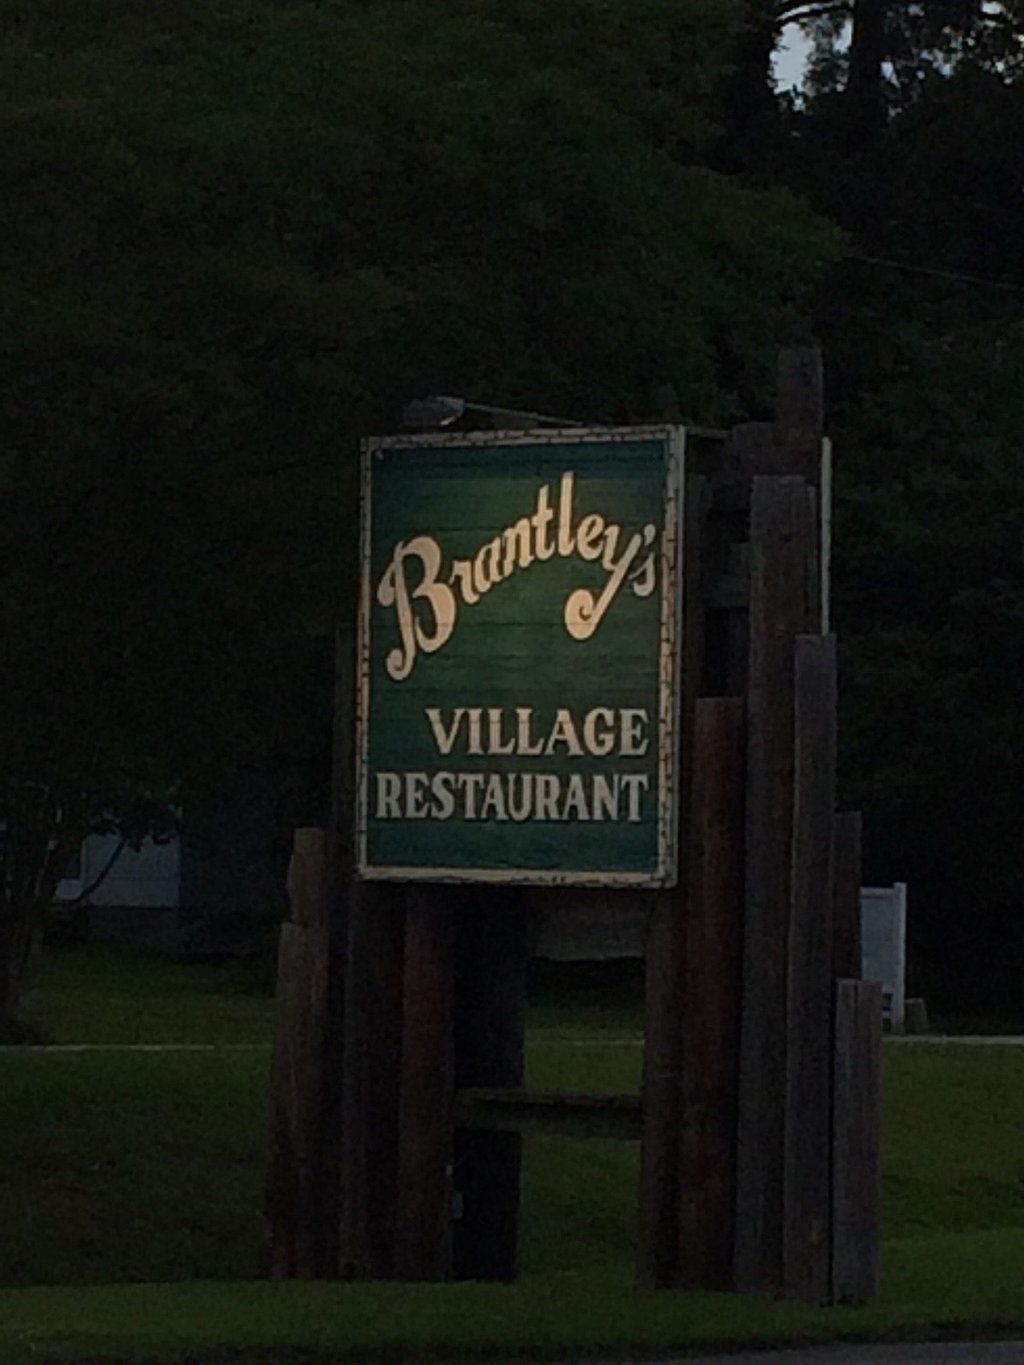 Brantley`s Village Restaurant